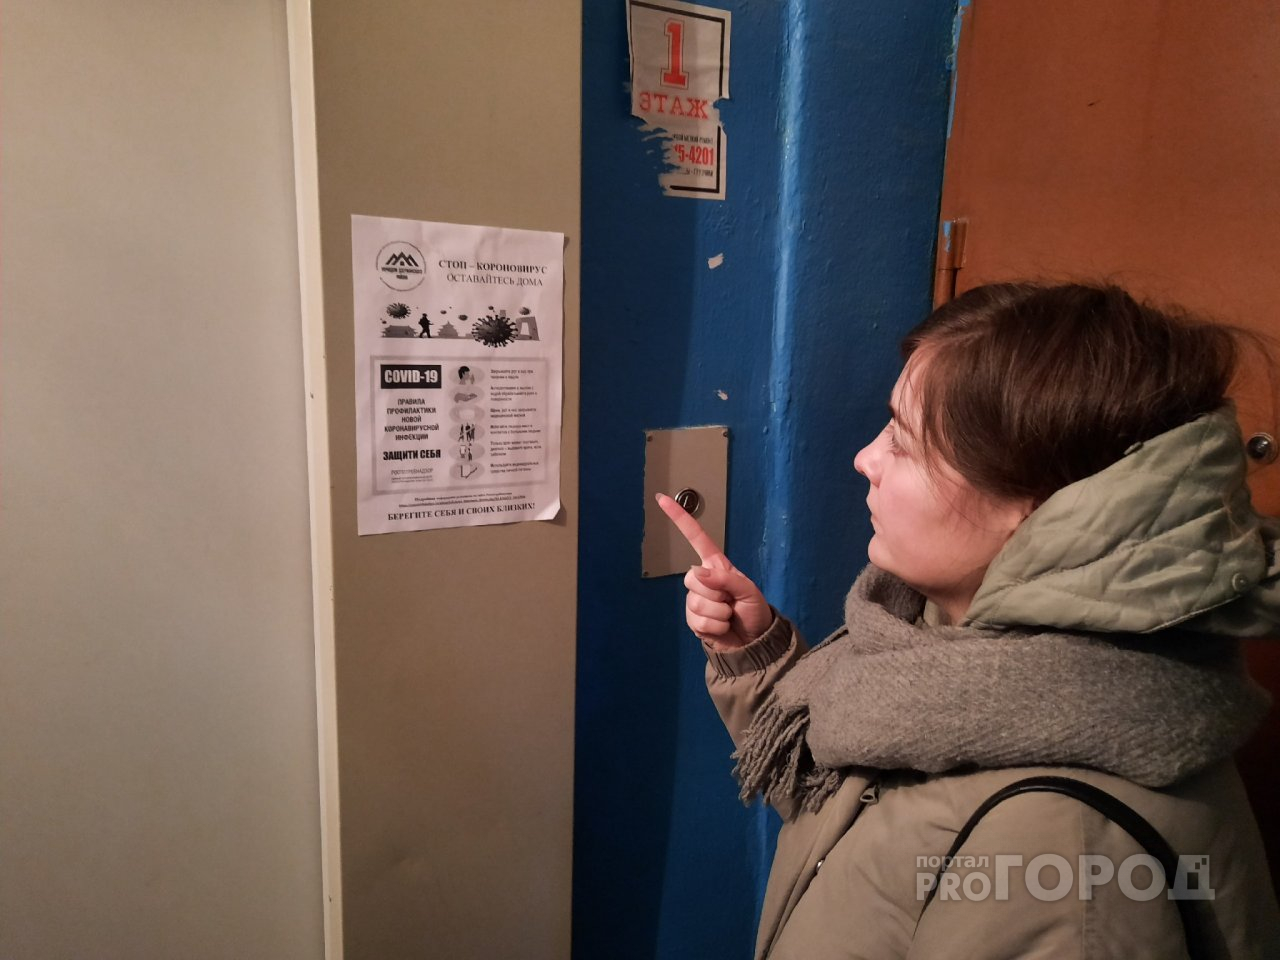 "Борются не с вирусом, а жильцами": что стало с подъездами ярославцев после обработки. Видео